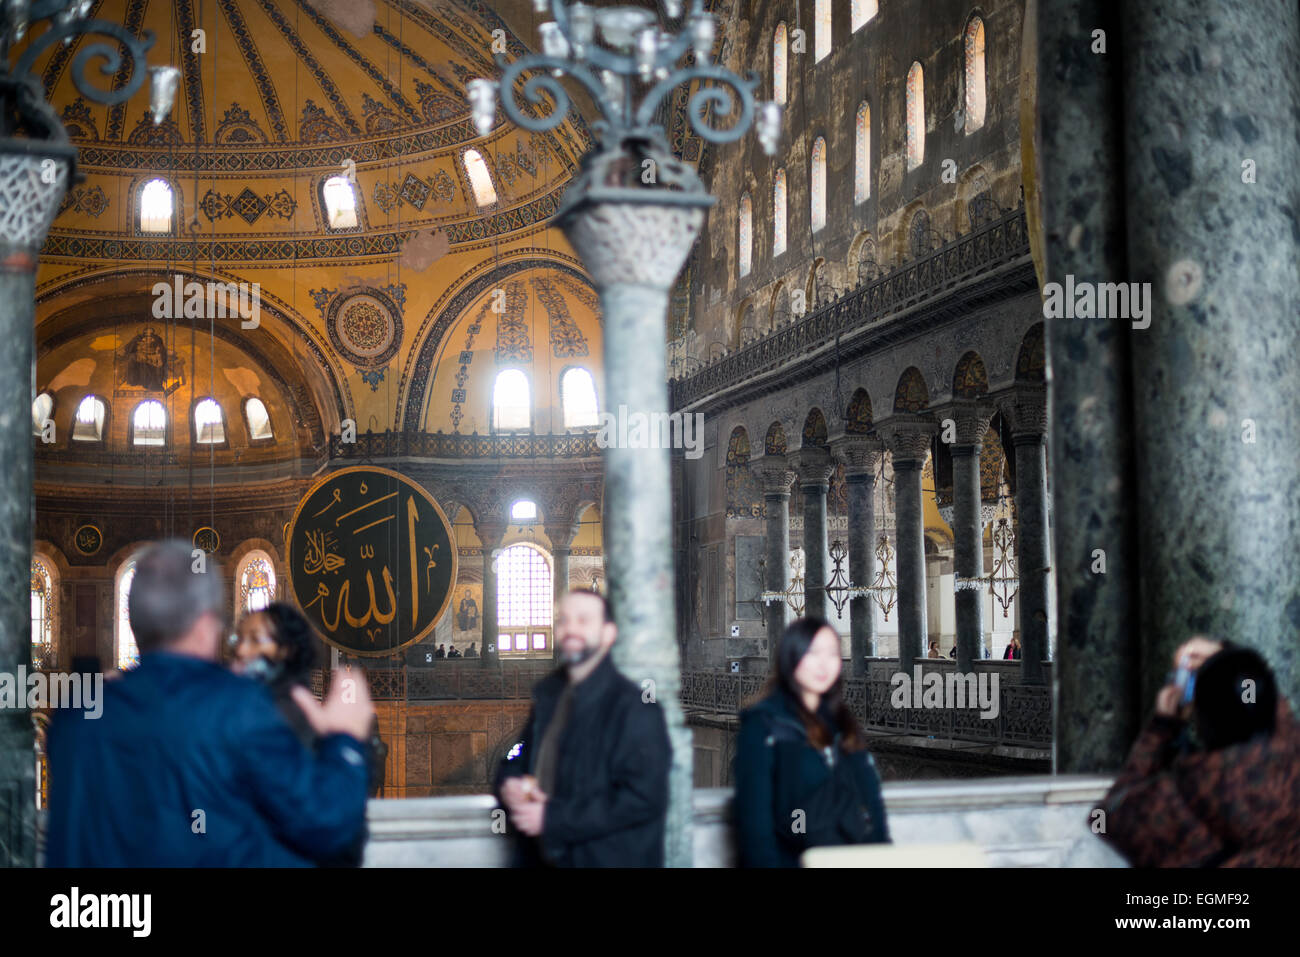 ISTANBUL, Turquie - pose touristique pour les photos dans la galerie supérieure de Sainte-Sophie. Construit en 537, il a servi de cathédrale orthodoxe orientale, de cathédrale catholique romaine, de mosquée et maintenant de musée. Également connu sous le nom d'Ayasofya ou d'Aya Sofia, c'est l'un des principaux monuments d'Istanbul. En juillet 2020, le président turc Recep Tayyip Erdogan décrète que Sainte-Sophie serait reconvertie en mosquée. Banque D'Images